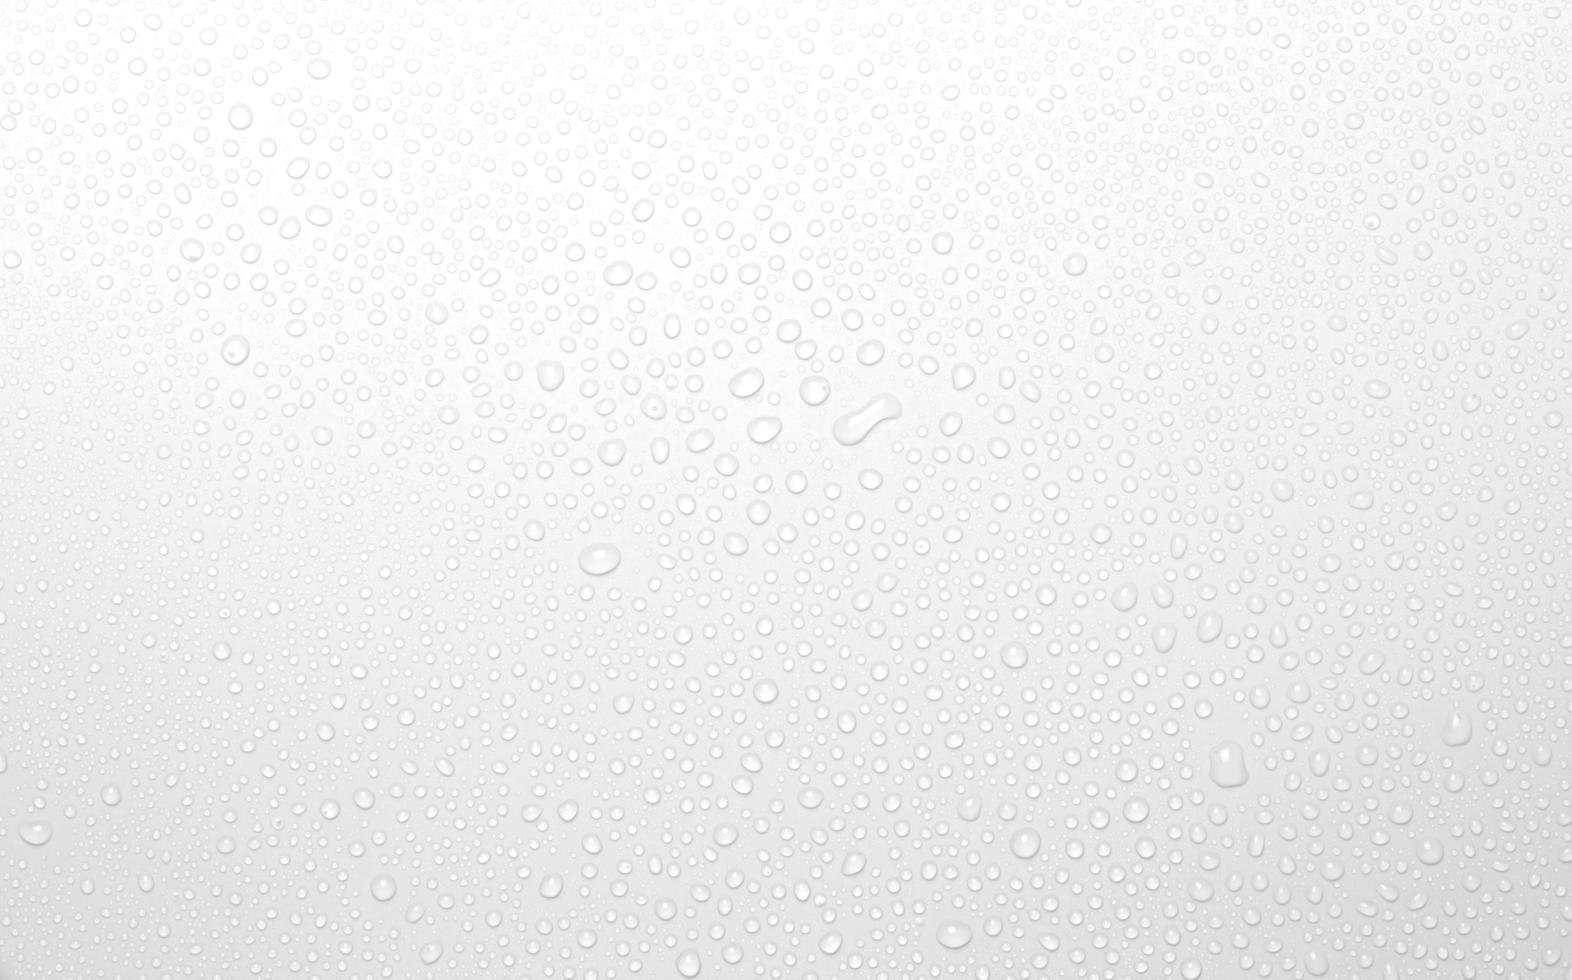 het concept van waterdruppels op een witte achtergrond foto